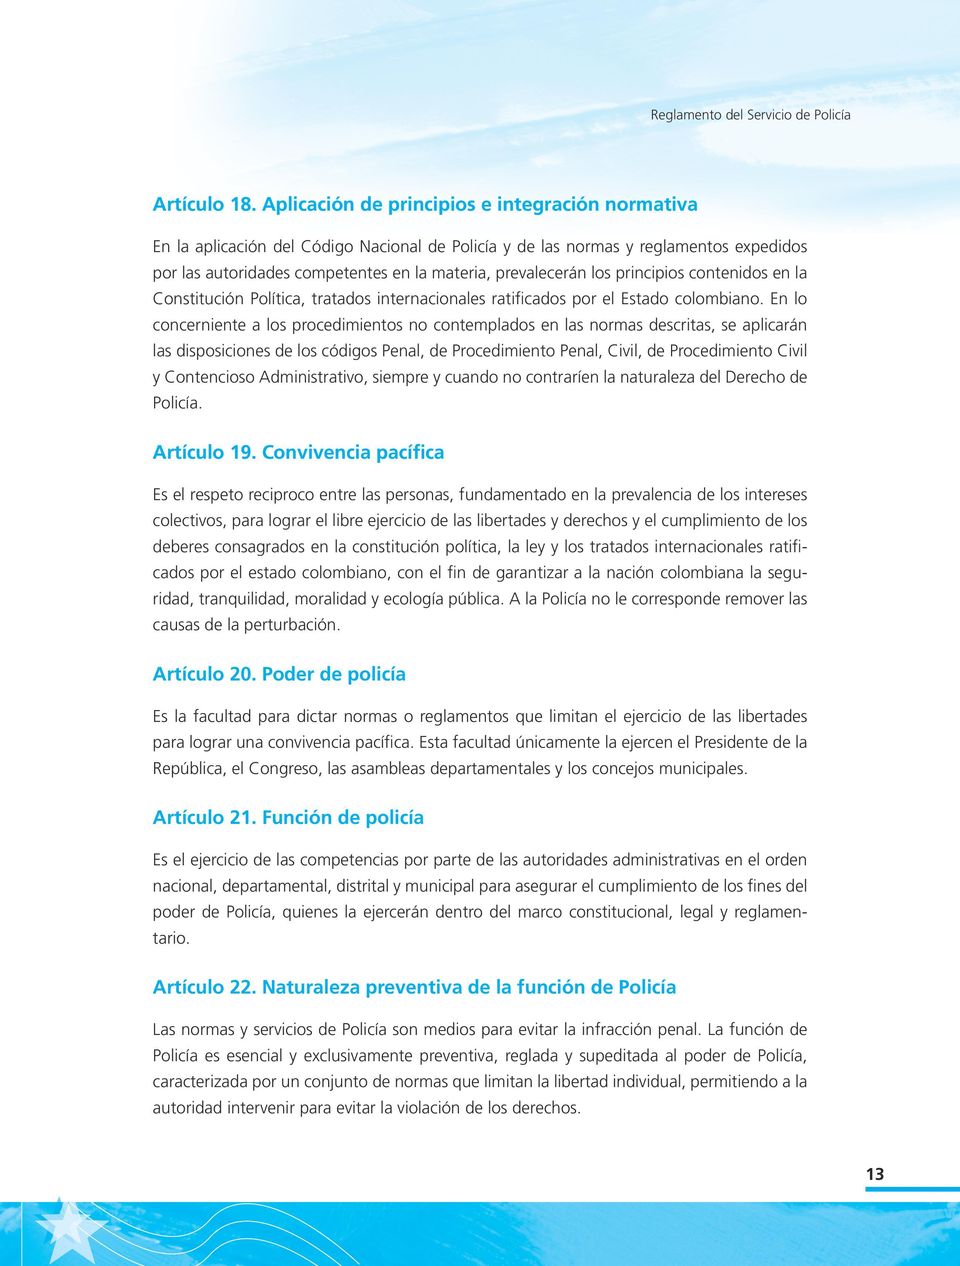 los principios contenidos en la Constitución Política, tratados internacionales ratificados por el Estado colombiano.